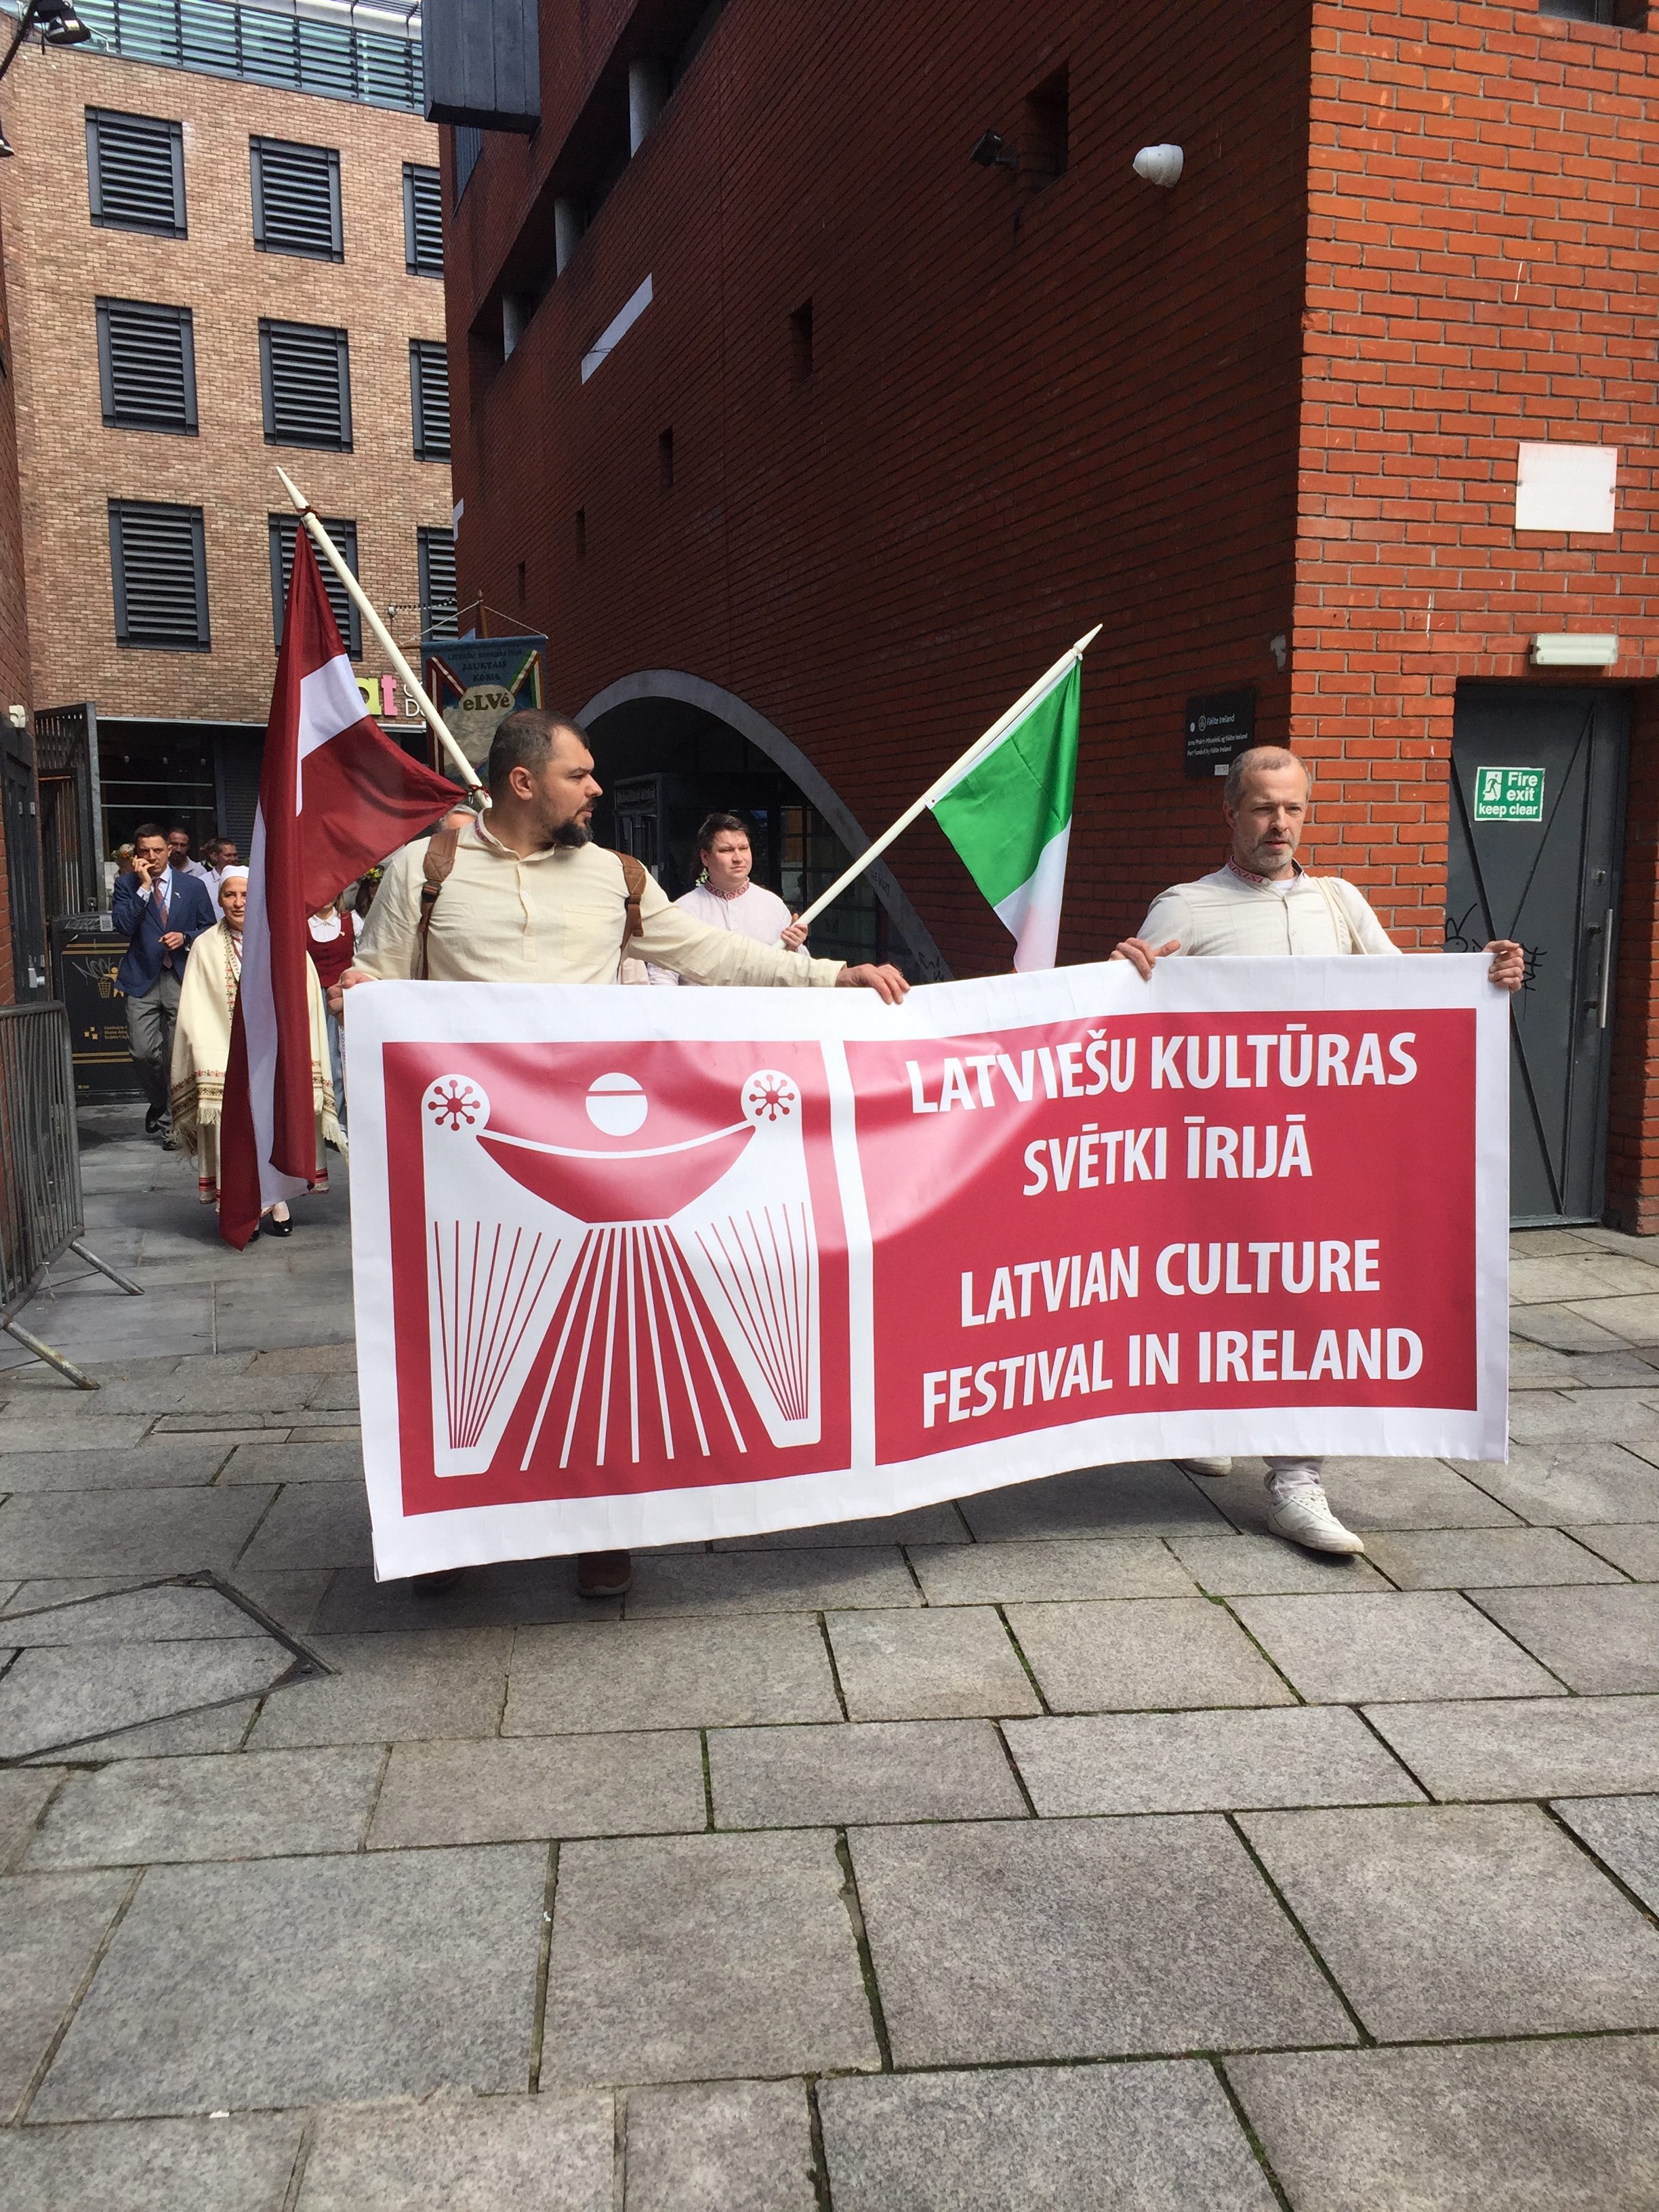 Cilvēki nes plakātu - Latviešu kultūras svētki Īrijā. Fonā diviem cilvēkiem redzami citi gājiena dlaībnieki, Īrijas un Latvijas karogi.